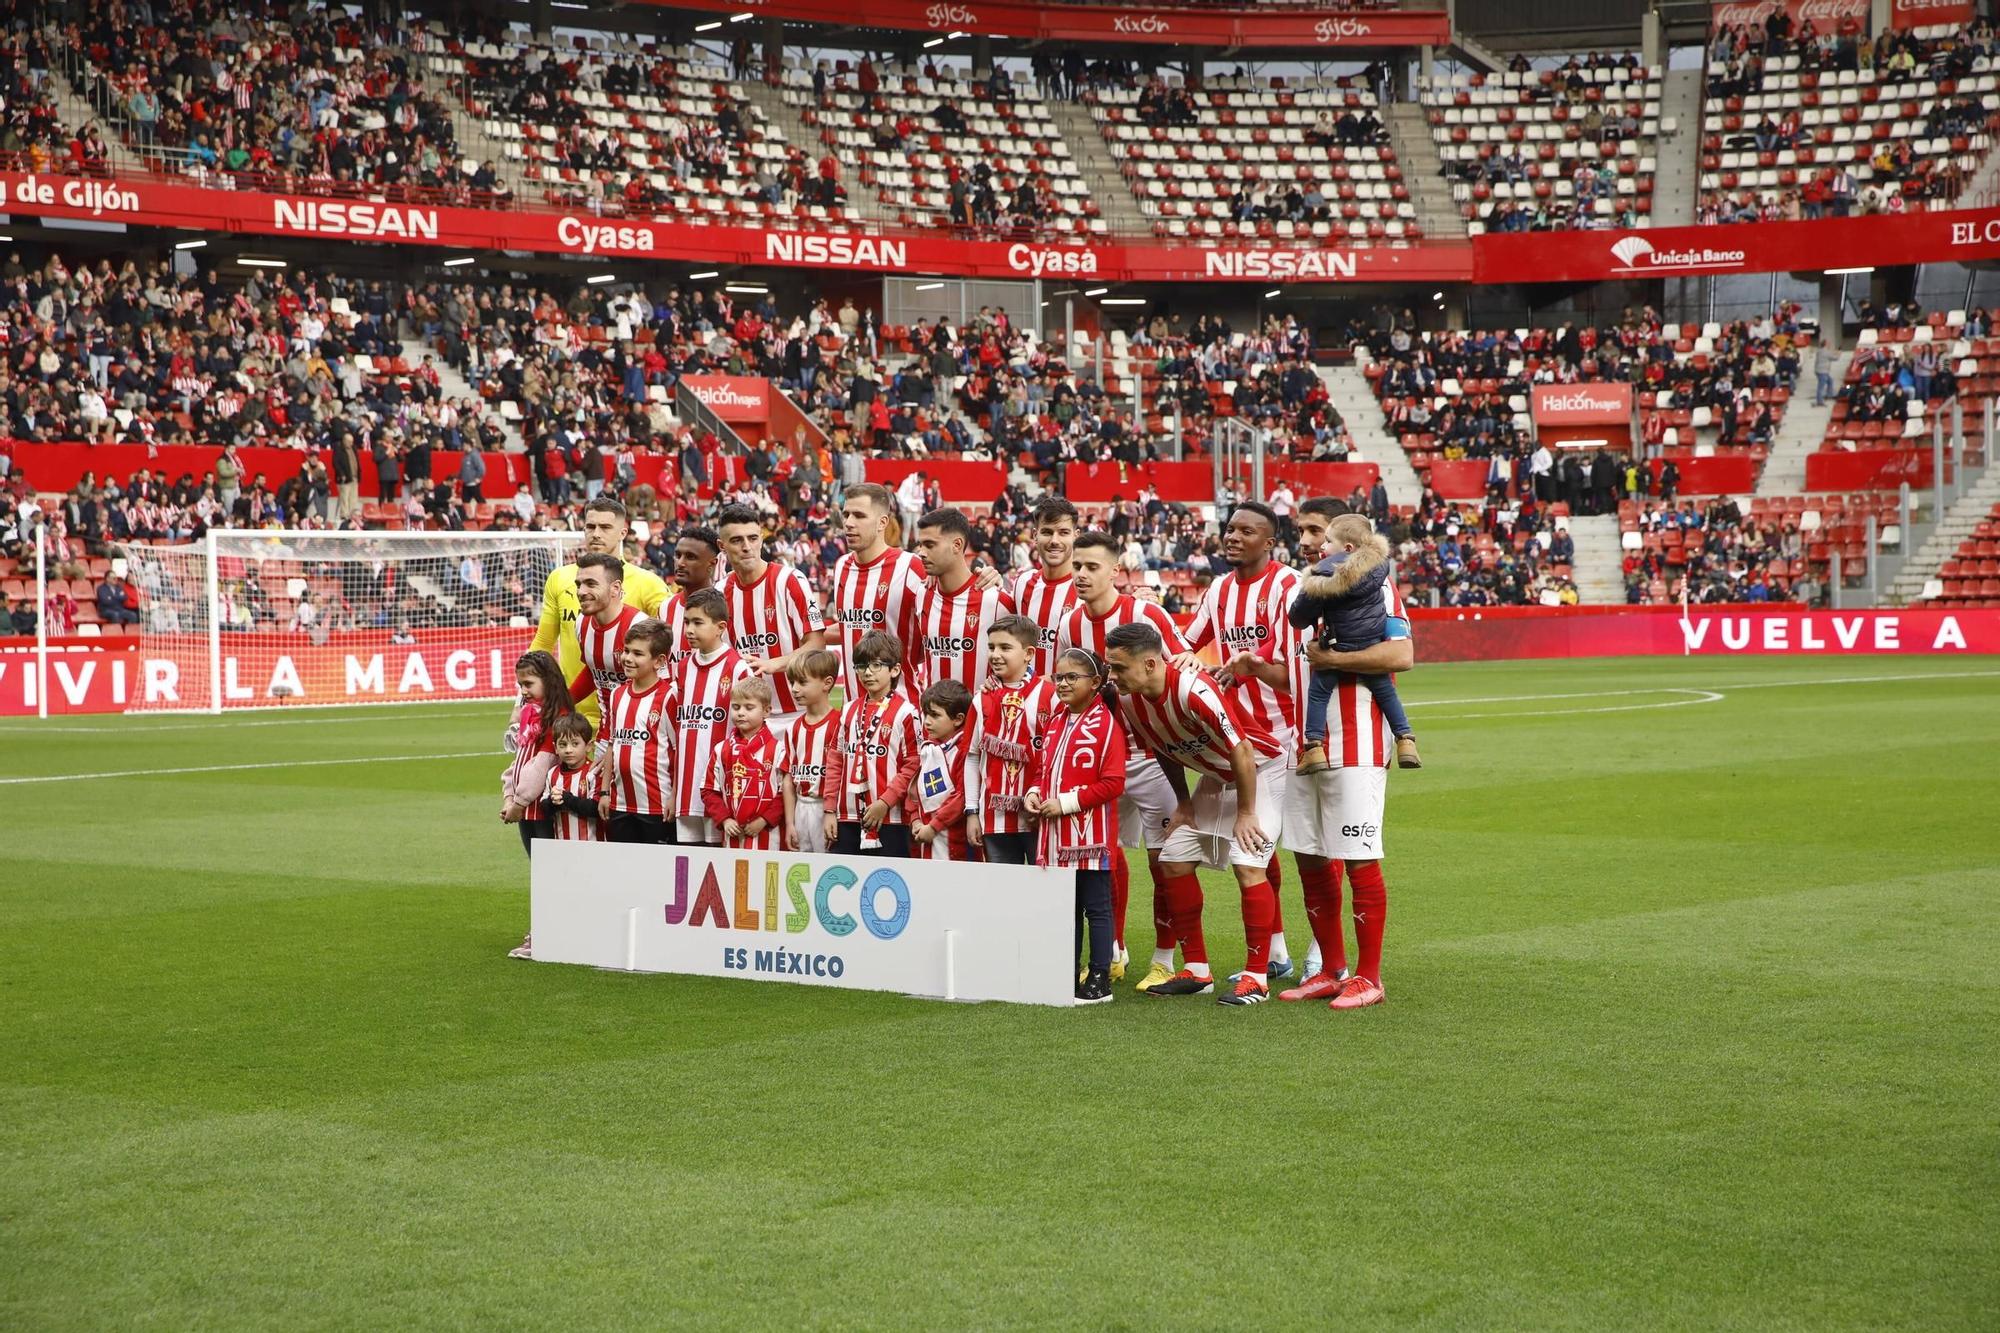 En imágenes: el encuentro entre el Sporting de Gijón y el Huesca